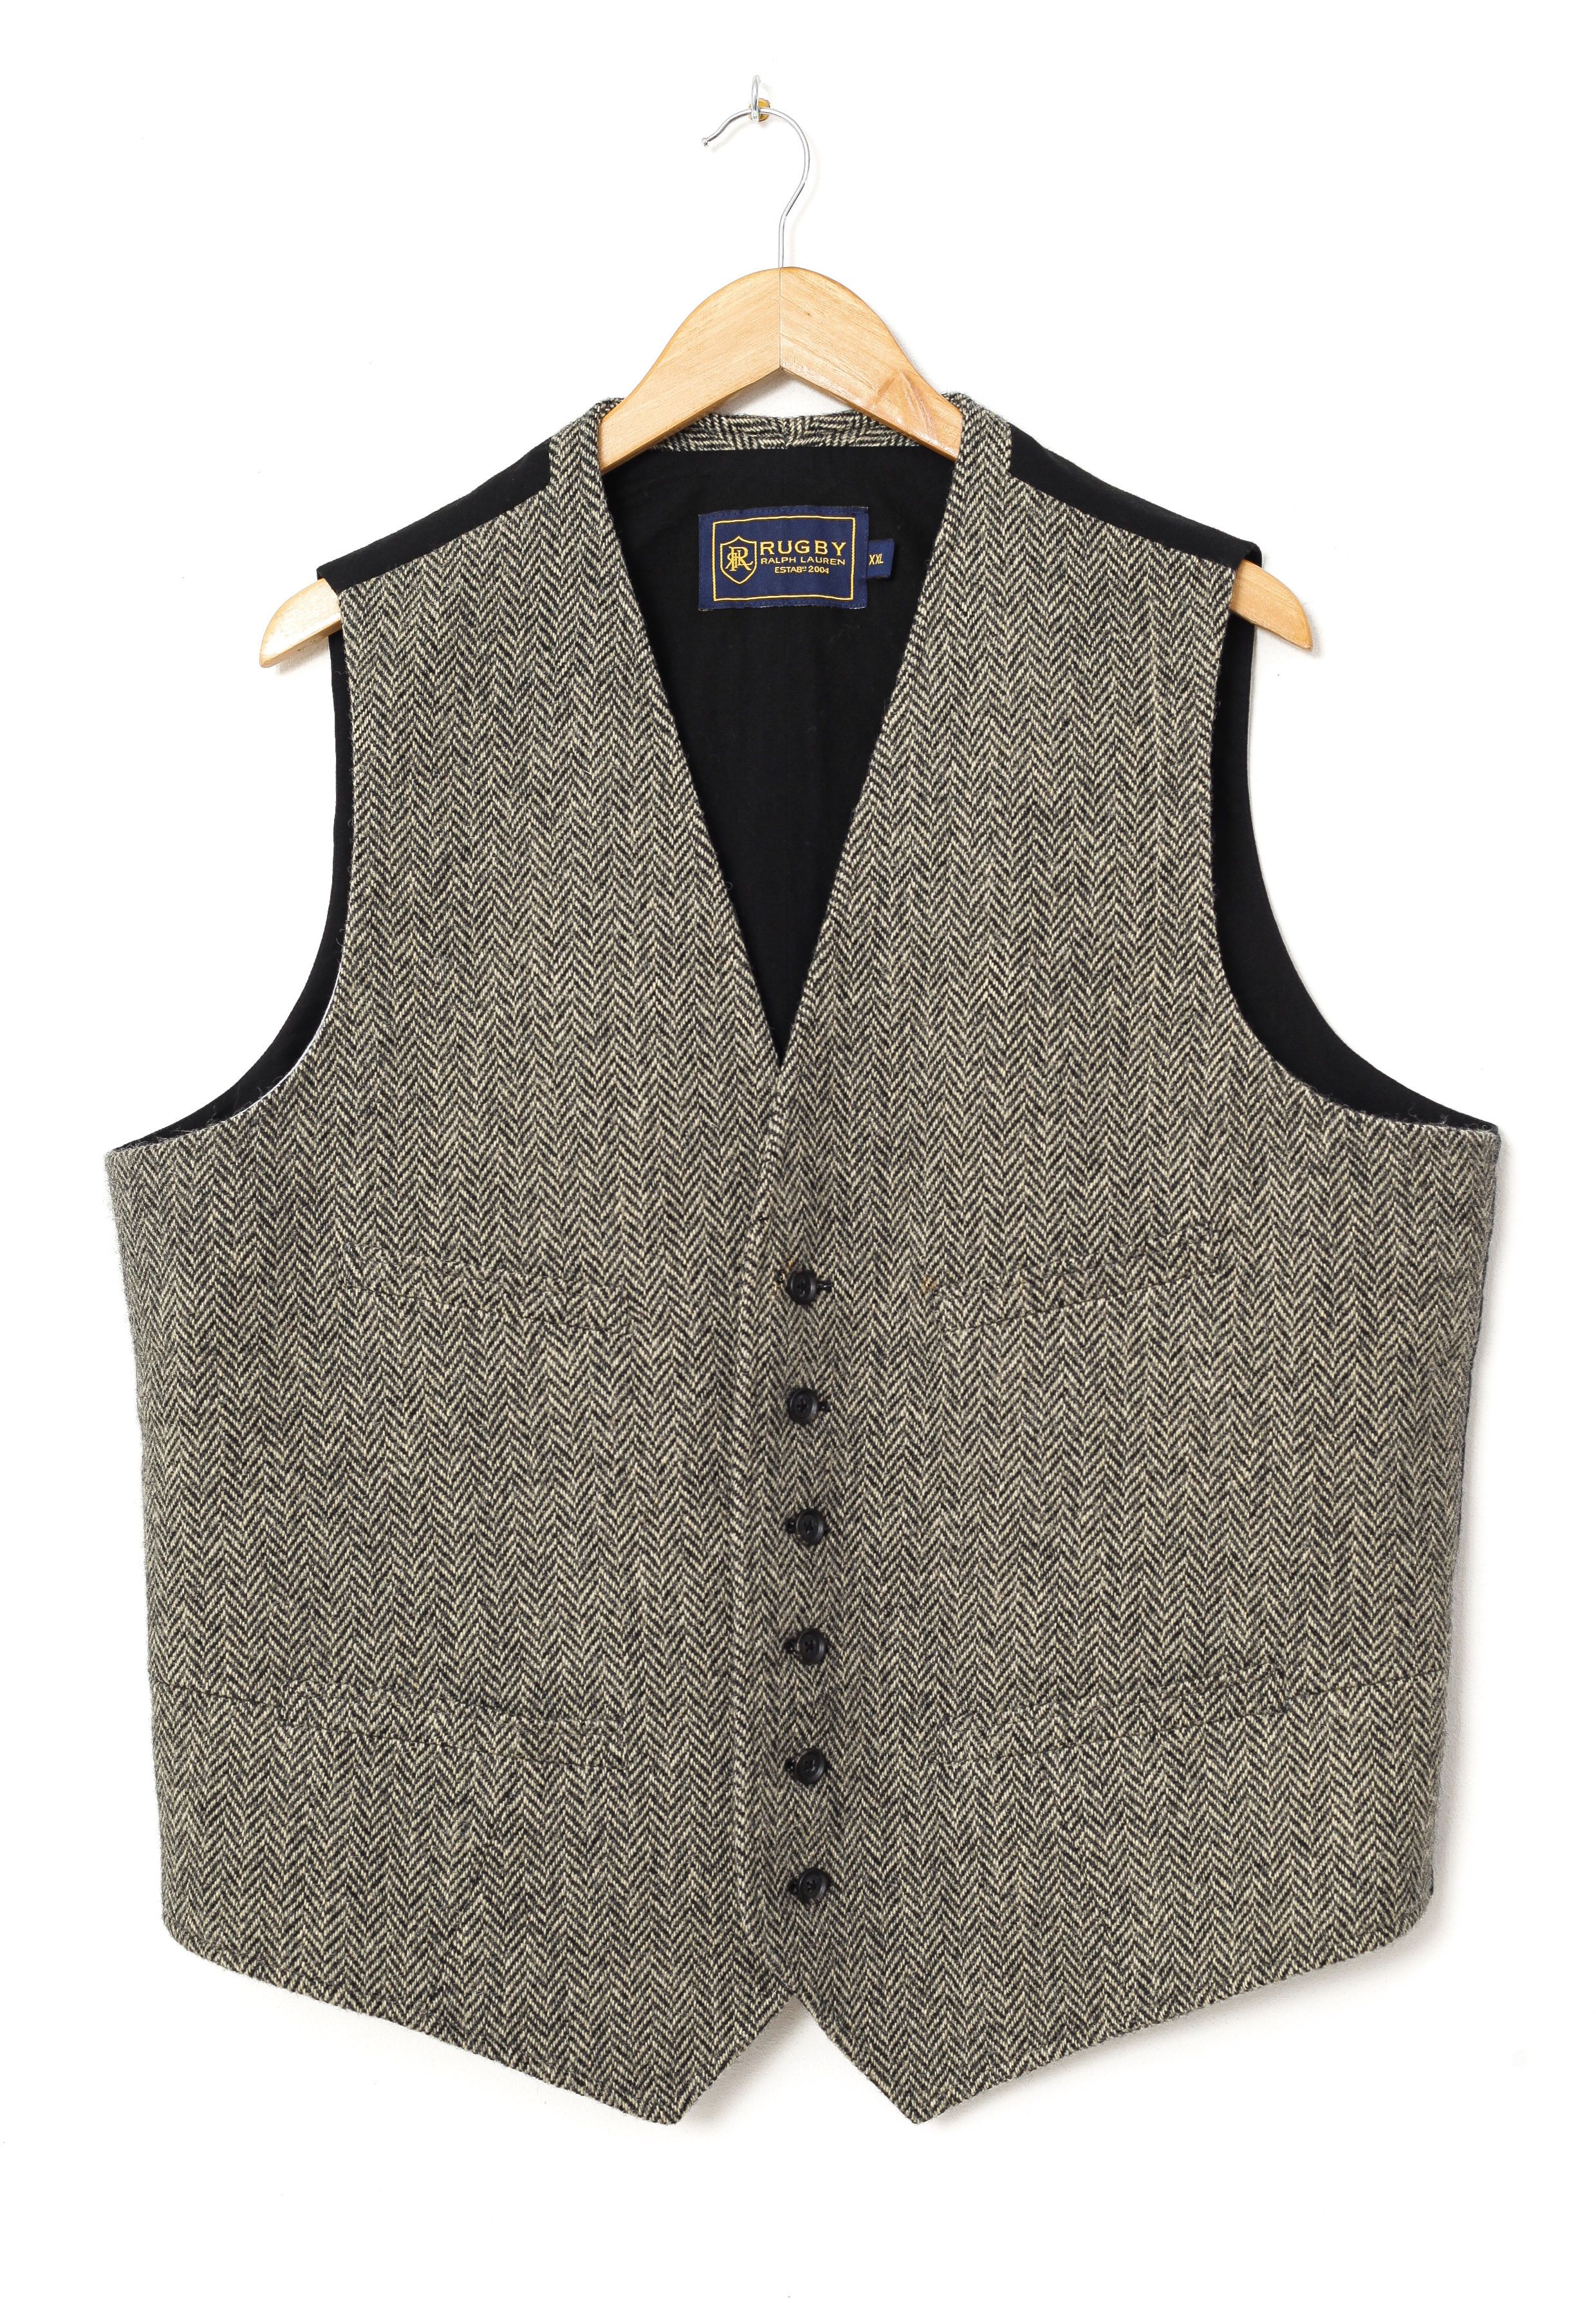 Polo Ralph Lauren RALPH LAUREN Rugby Tweed Waistcoat Vest E0594 | Grailed